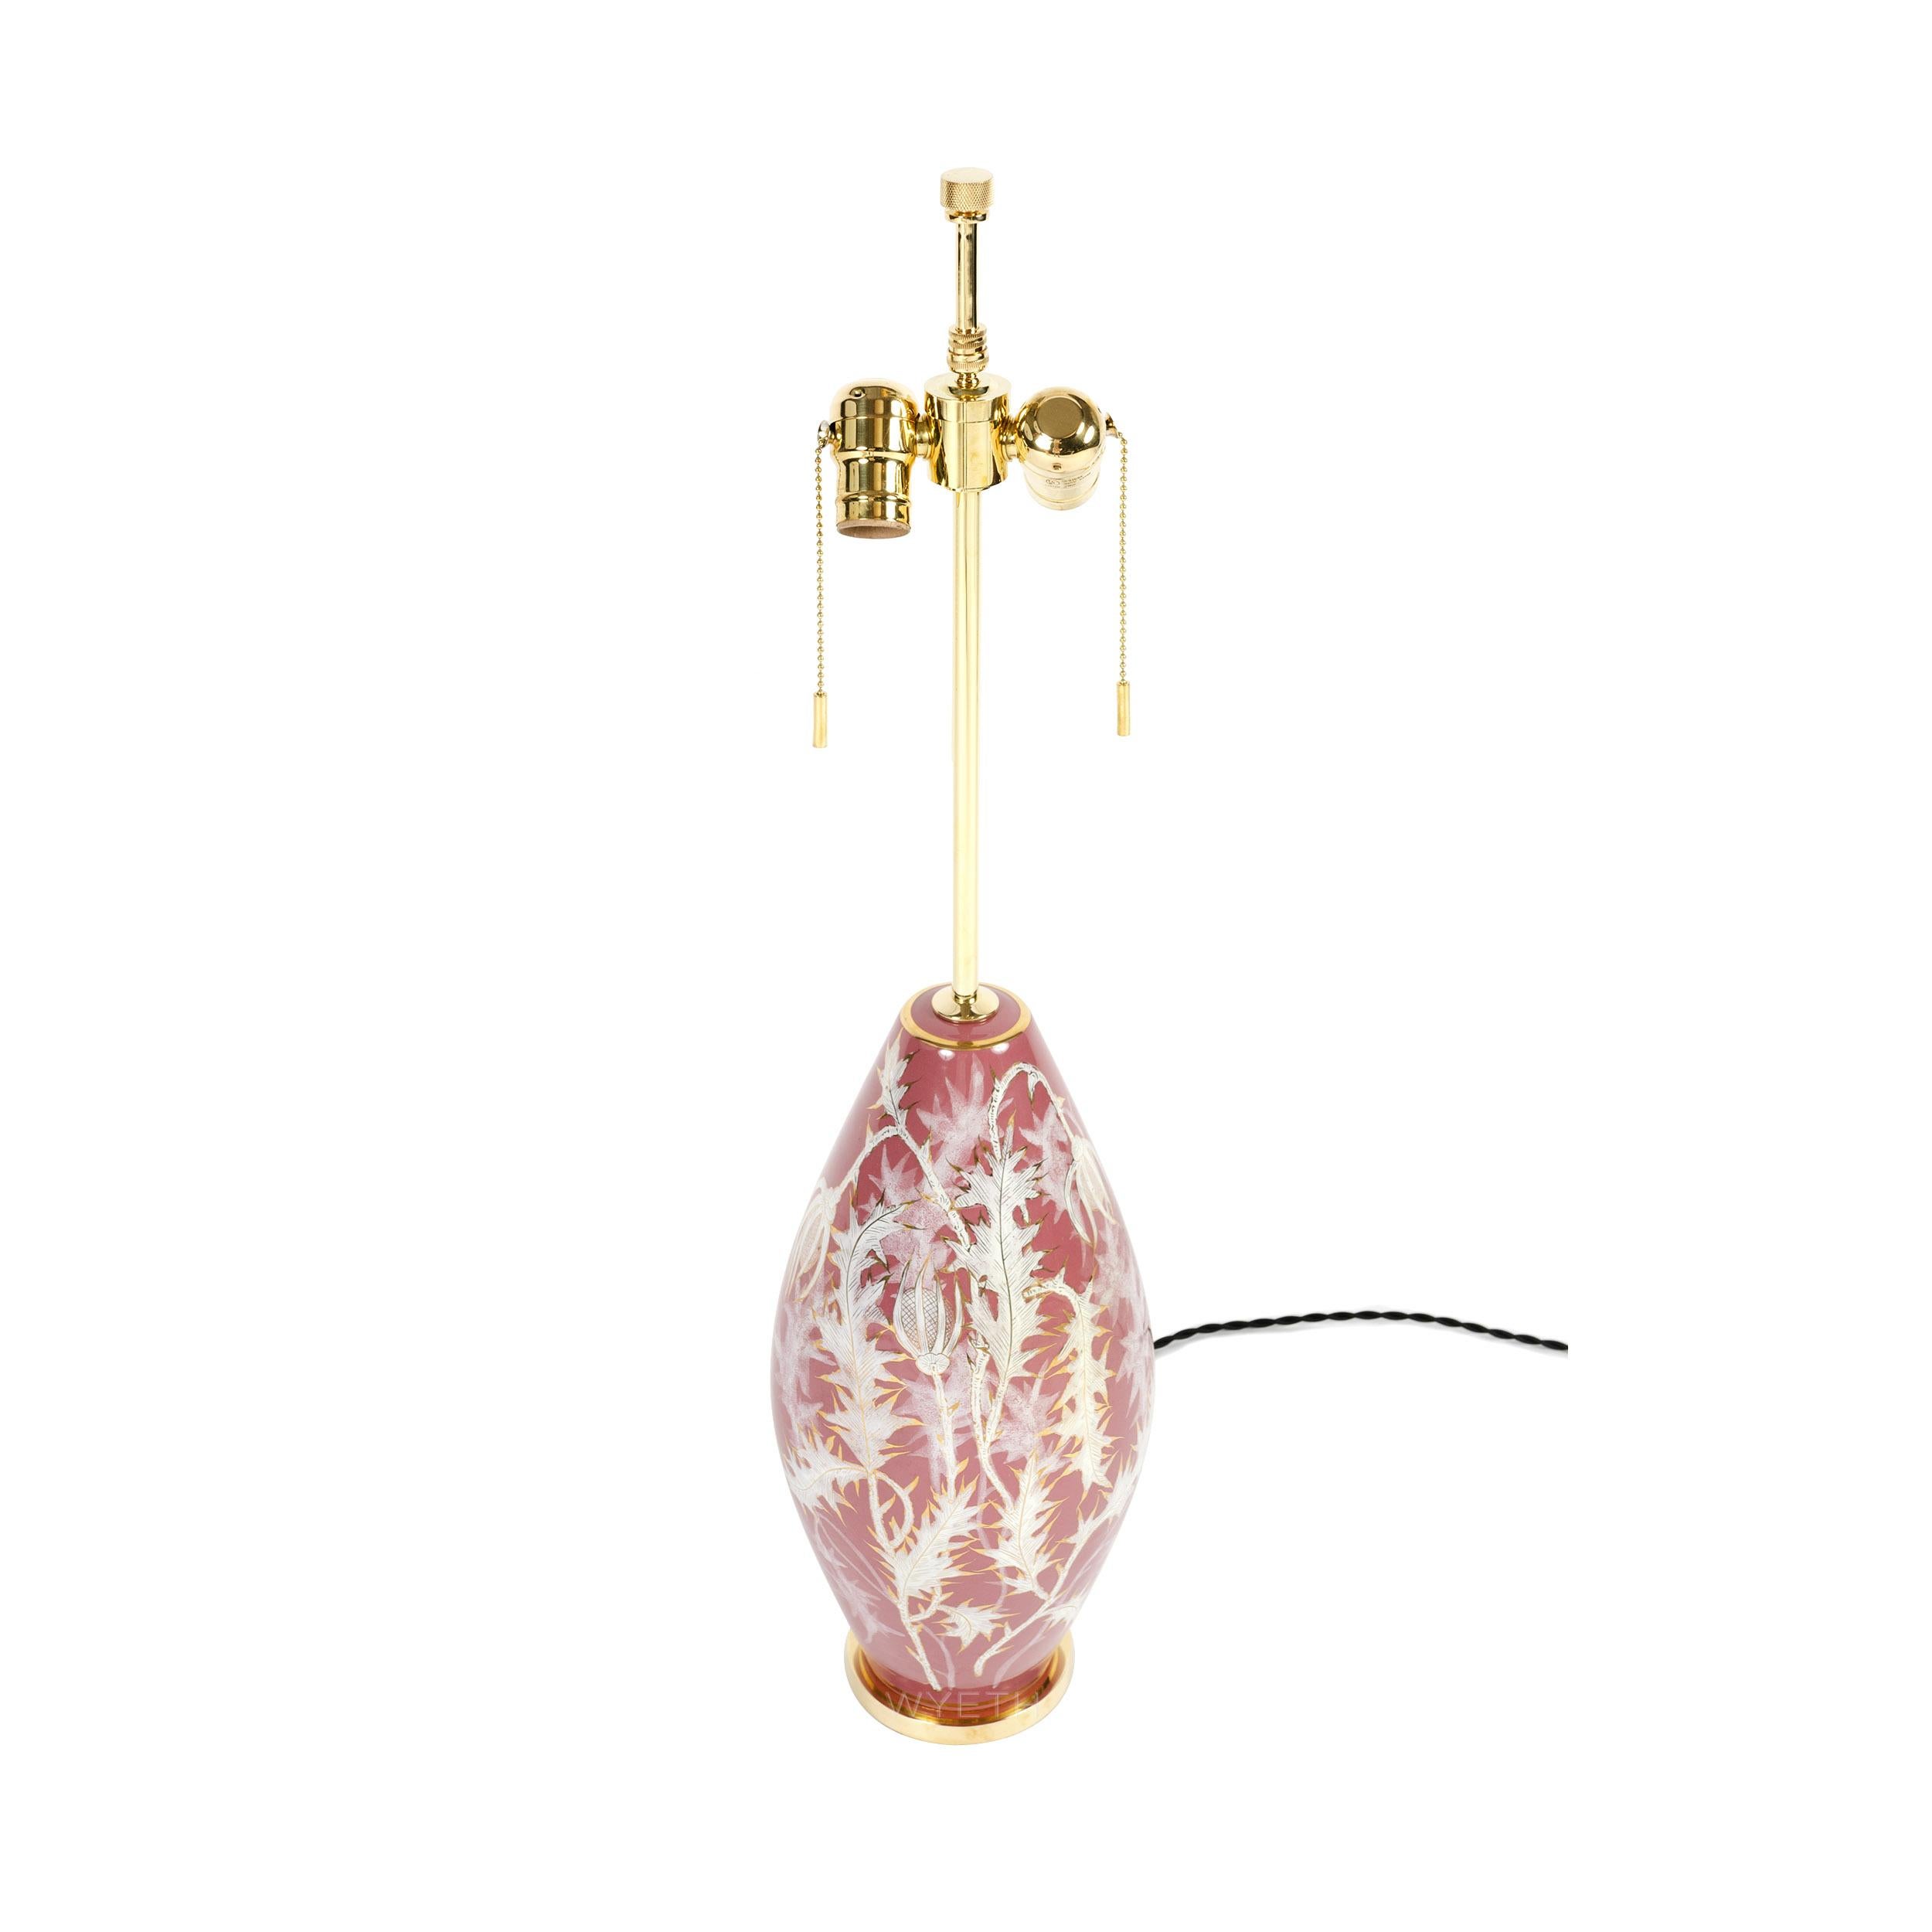 Lampe de table en céramique avec un corps de forme ovoïde, décoré à la main de feuilles de chardon et de vigne blanches avec des accents dorés sur un fond clair de couleur corail.